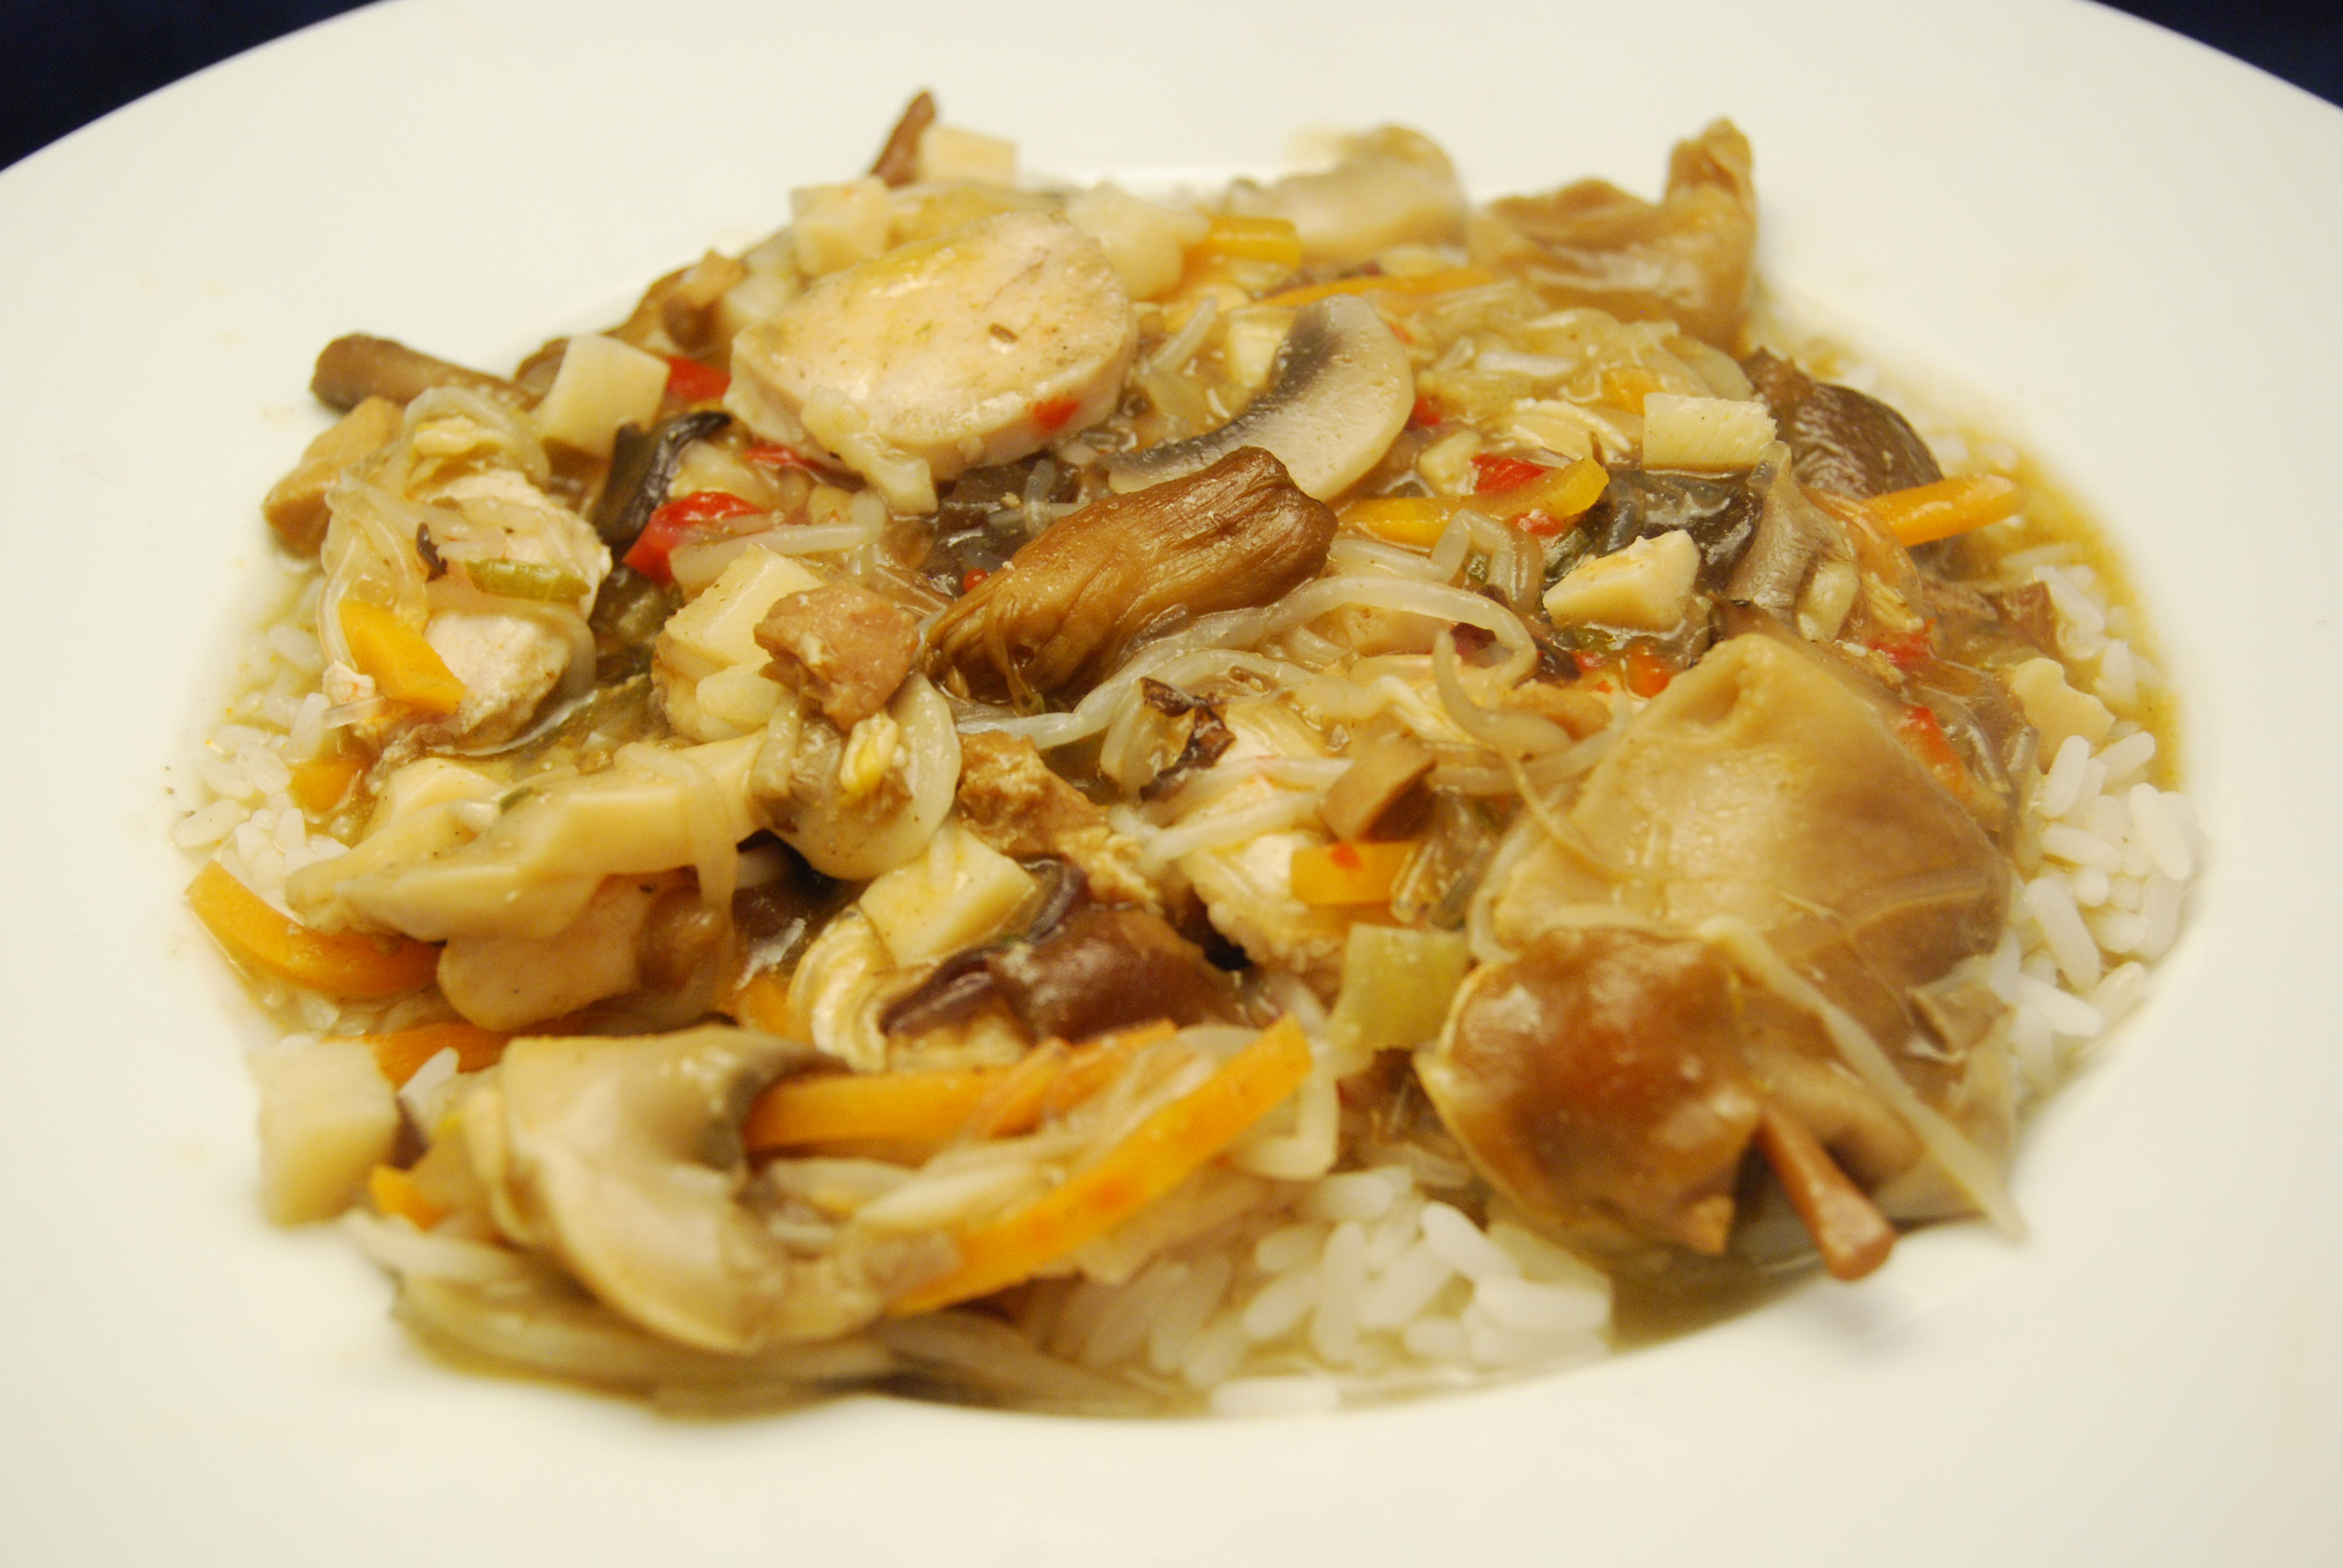 Hähnchenbrustfilet mit Wok-Pilz-Gemüse, Bihun-Sauce und Reis